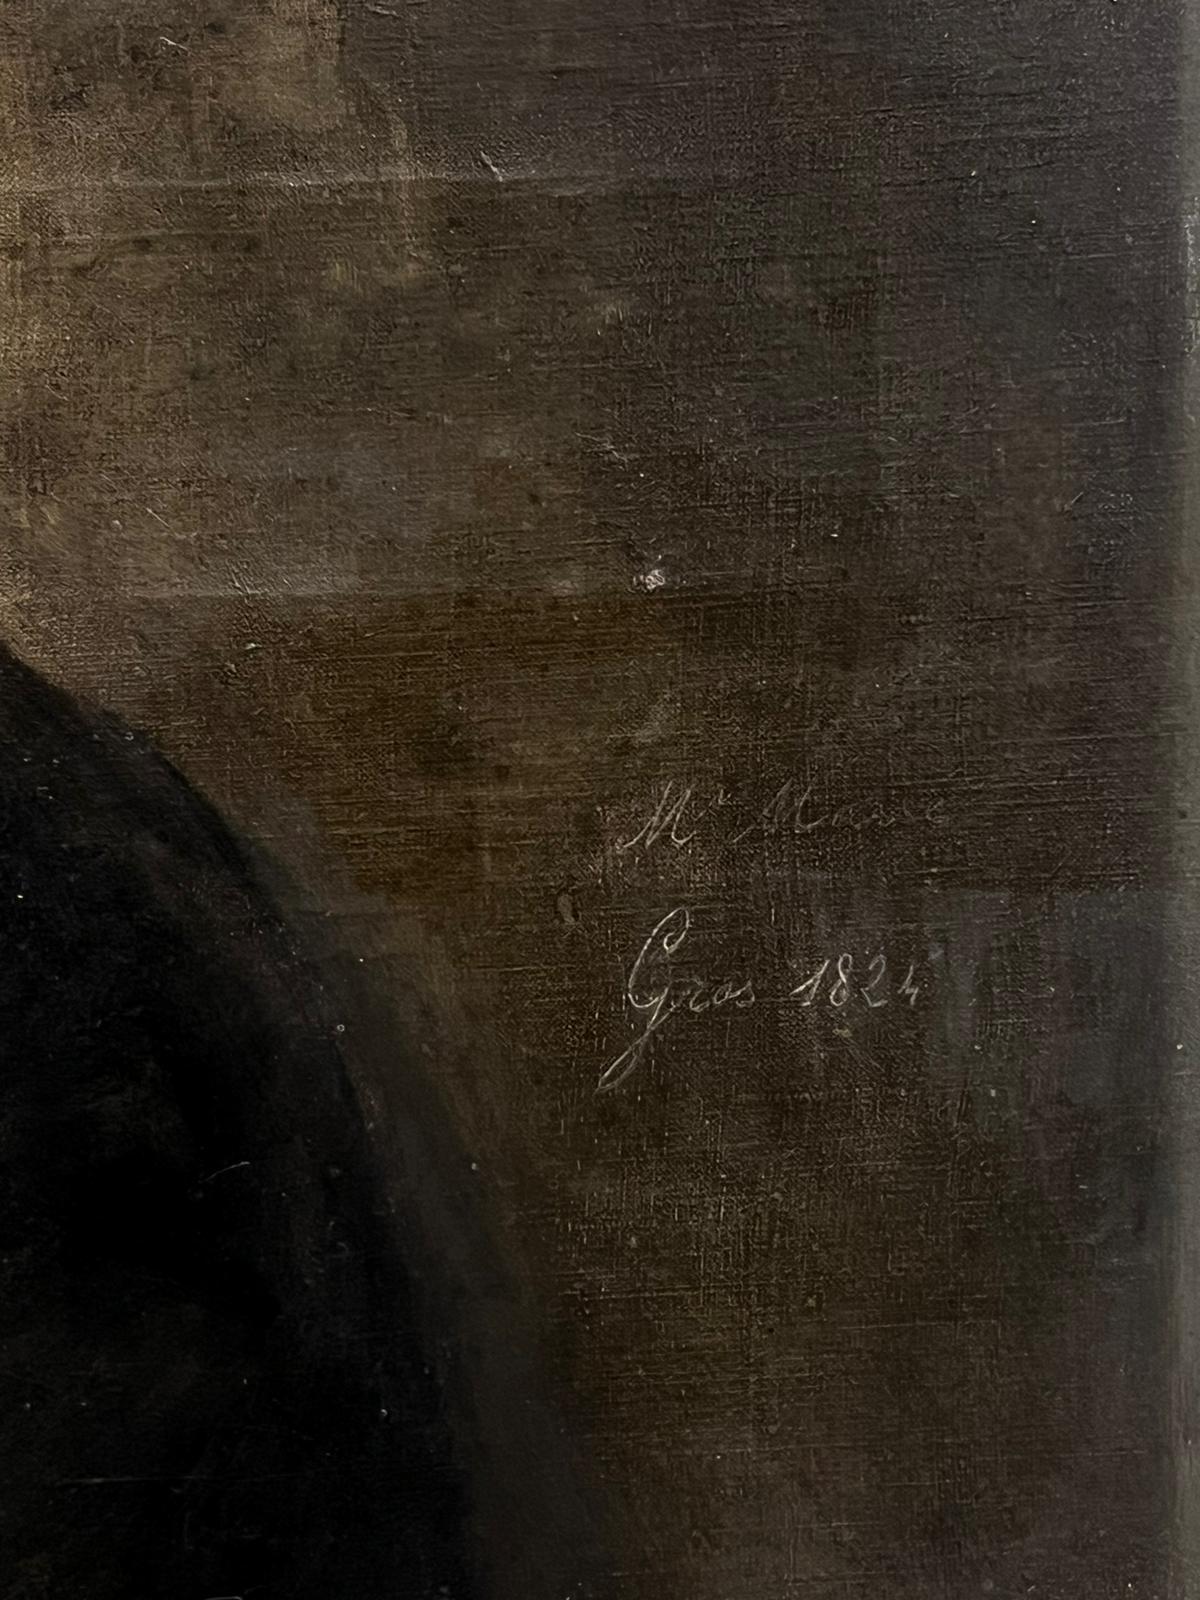 Porträt eines französischen Gentleman
Französische Schule, undeutlich signiert
aus dem Jahr 1824
verso beschriftet
Öl auf Leinwand, ungerahmt
Gemälde: 22 x 19 Zoll
Provenienz: Privatsammlung, Frankreich
Zustand: sehr guter und gesunder Zustand, mit